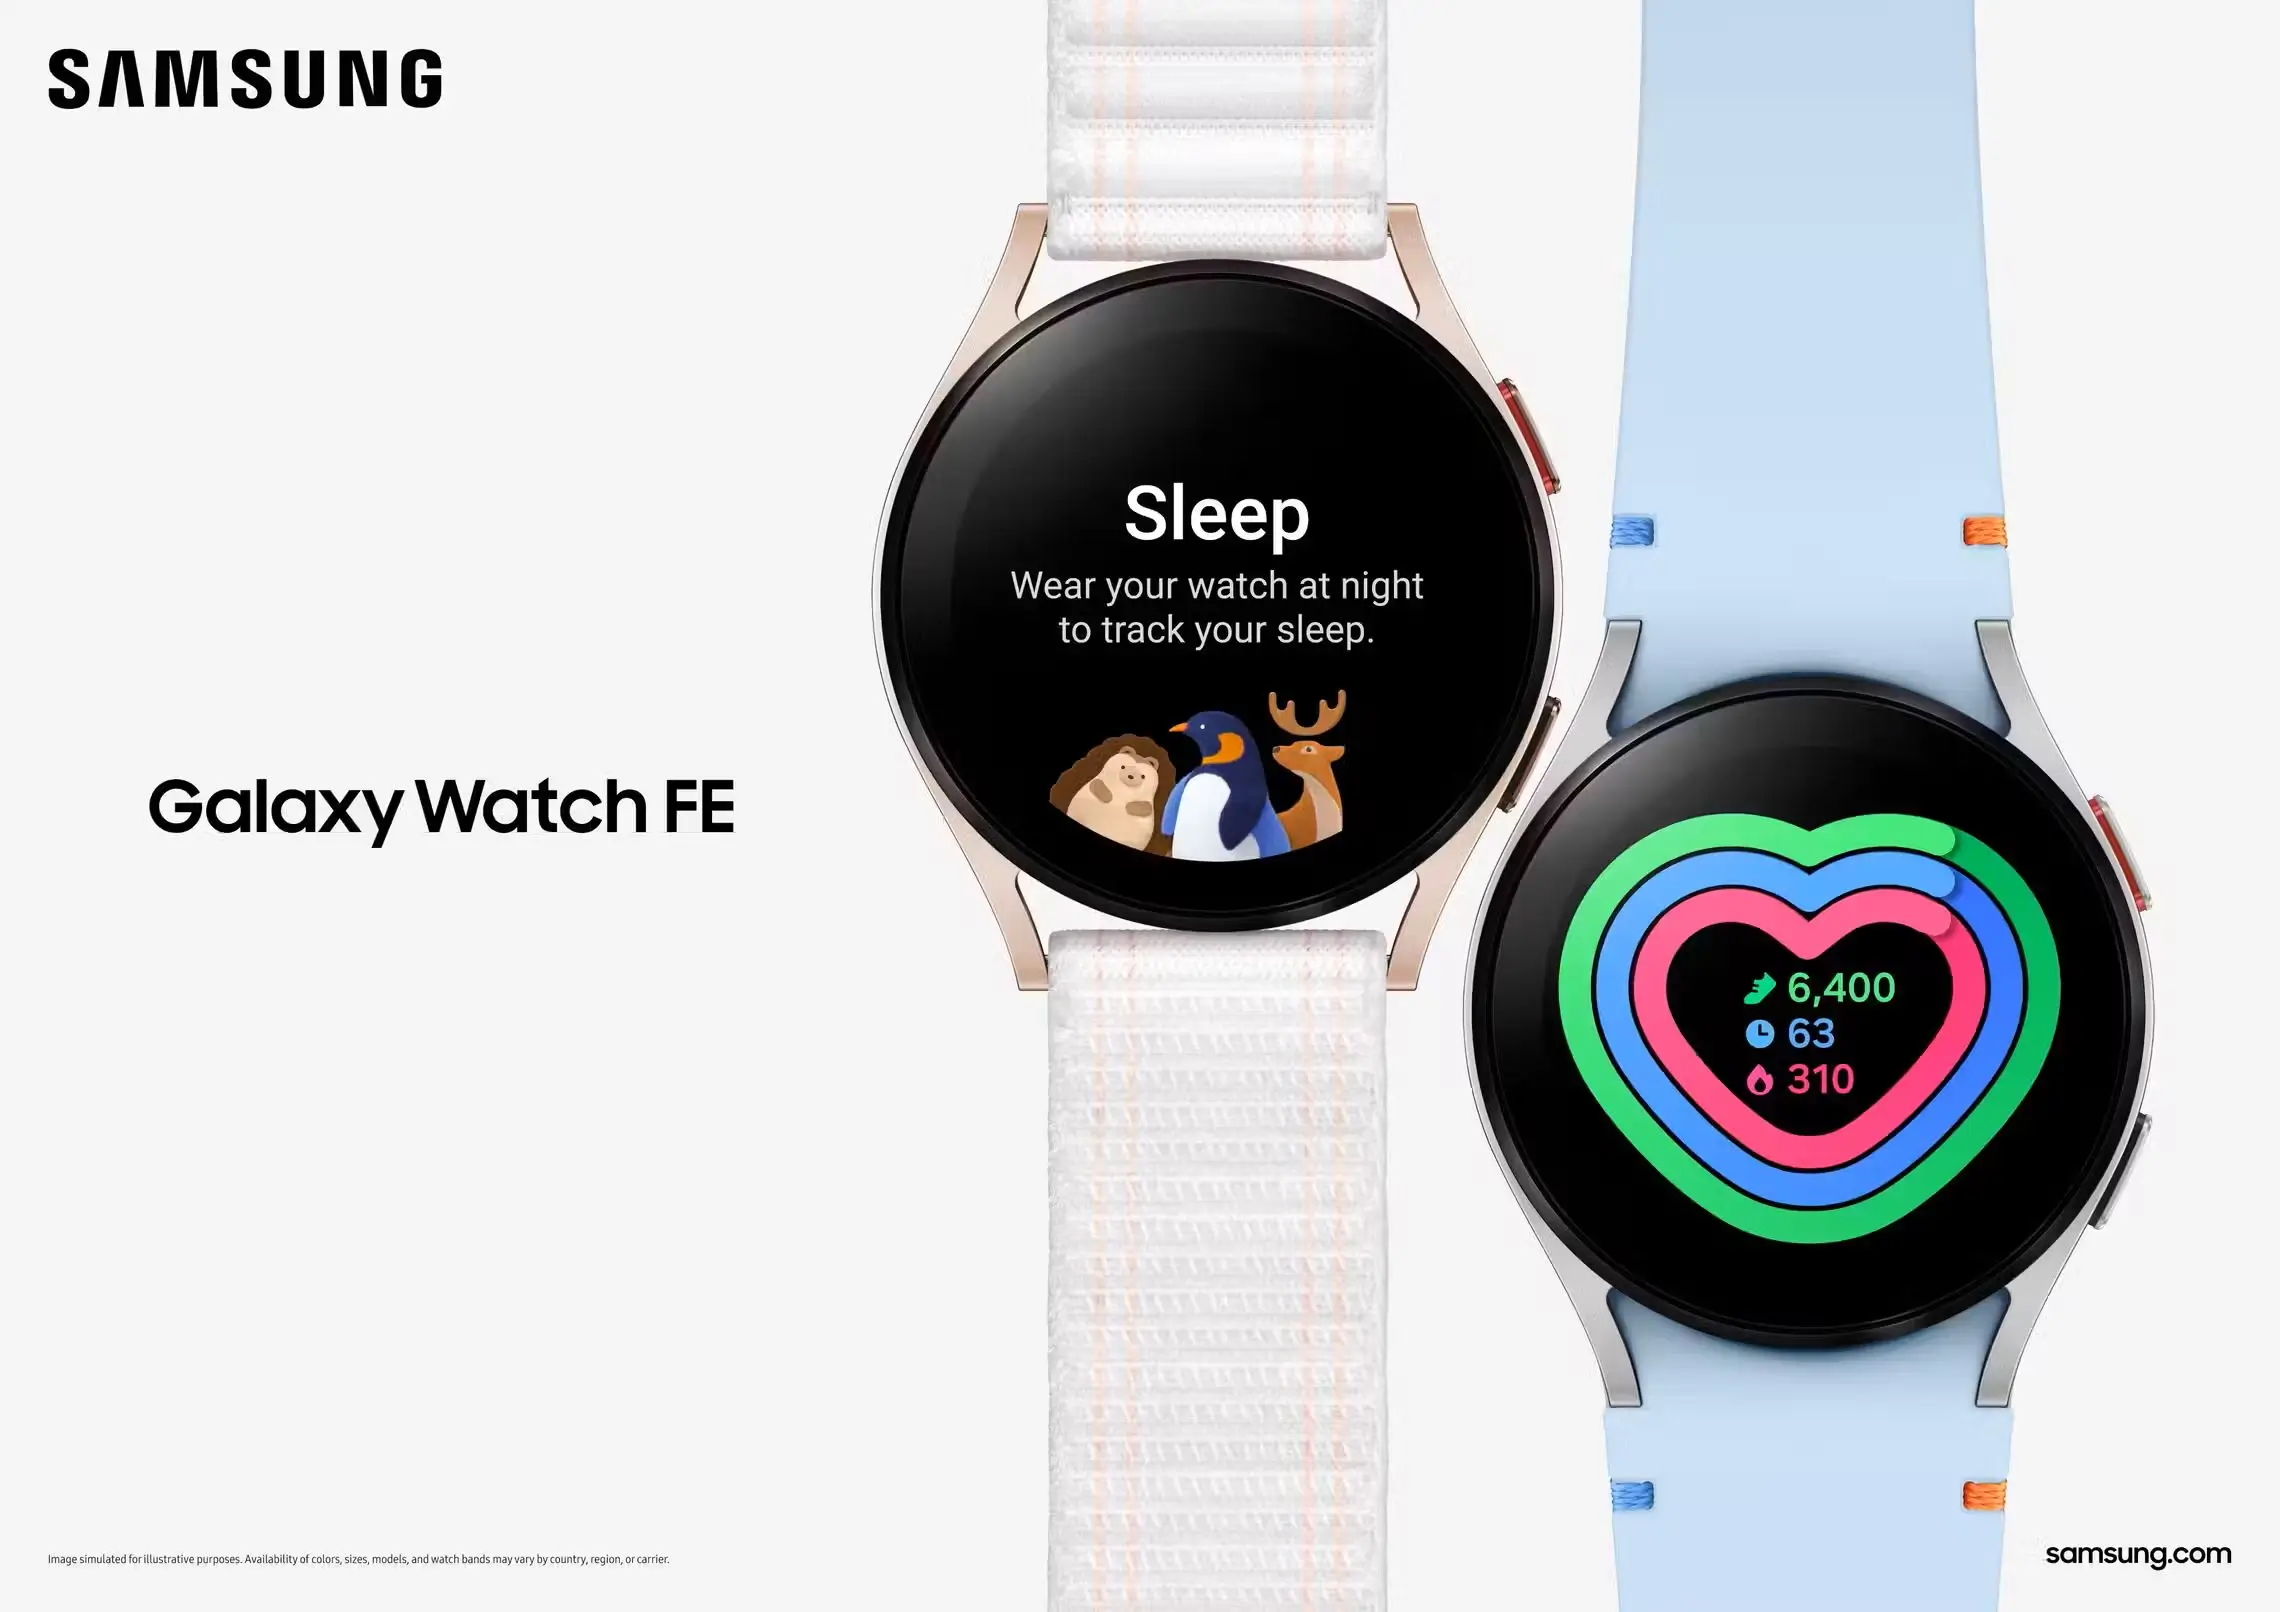 Miért volt jó döntés a Samsung részéről a Galaxy Watch FE piacra dobása?